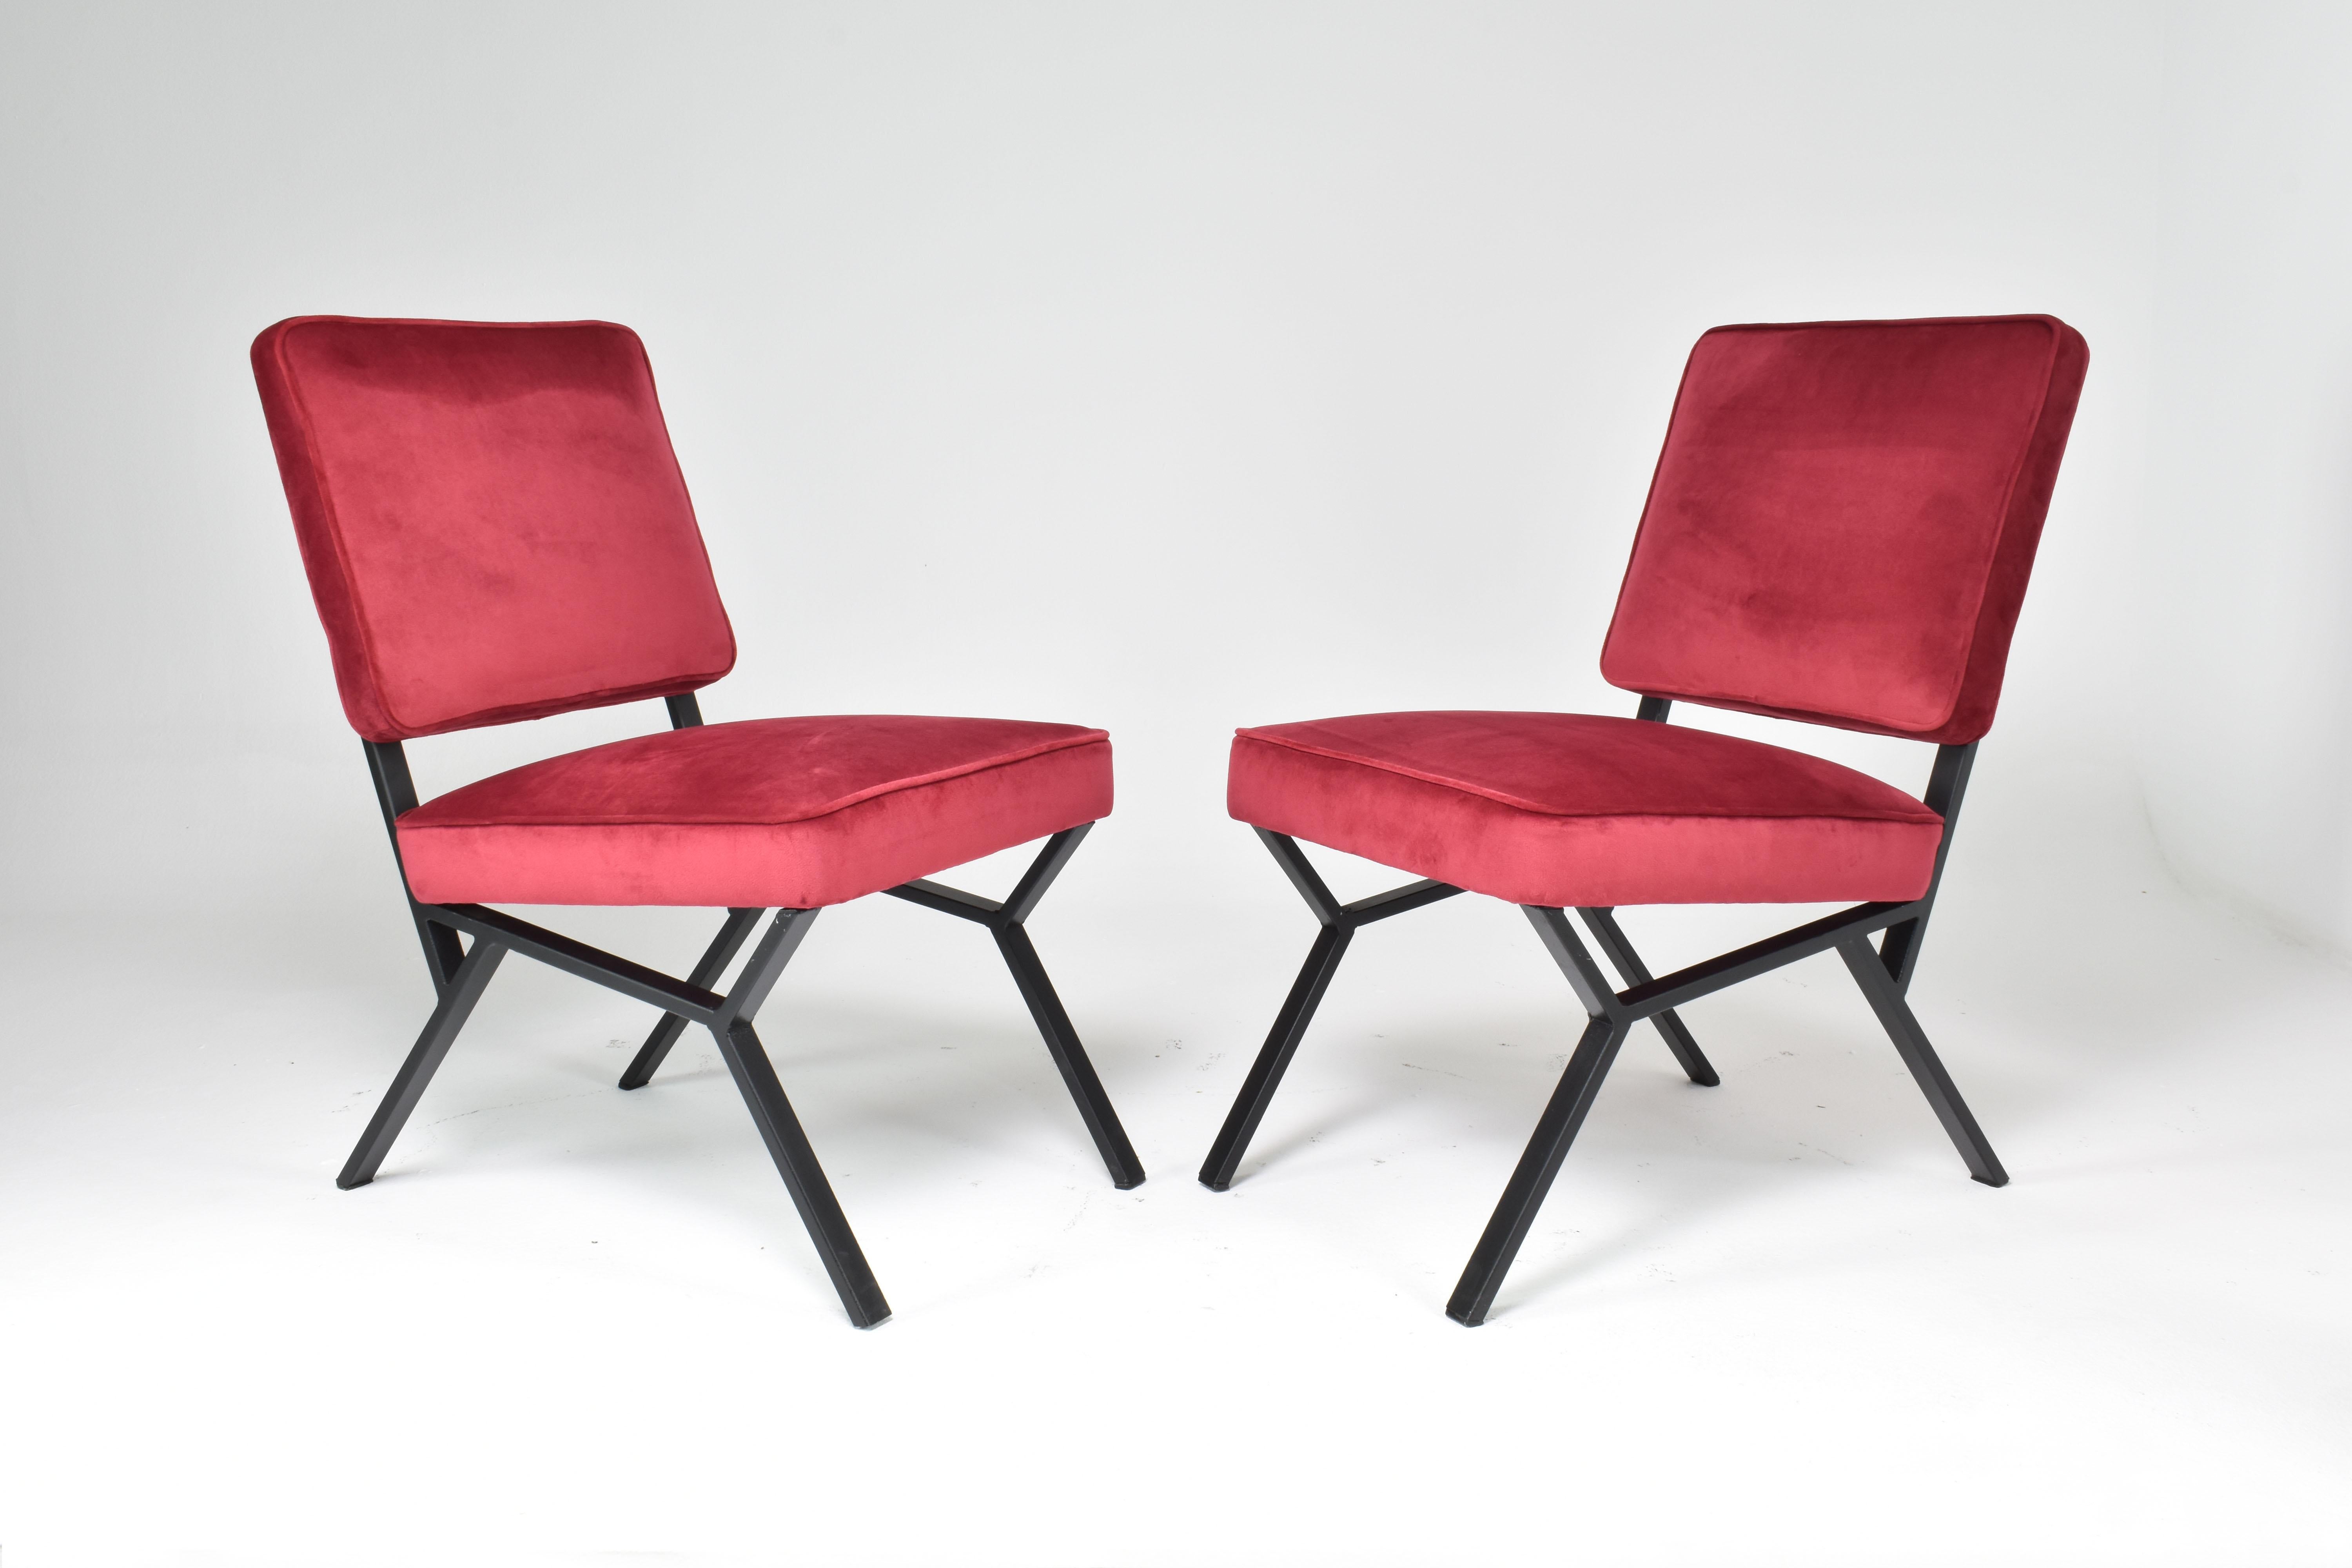 Zwei moderne italienische Stühle aus der Mitte des Jahrhunderts, die von Giancarlo Bovini entworfen wurden. Sie bestehen aus Metall und wurden in unserem Atelier vollständig restauriert und mit einer leuchtend neuen roten Polsterung versehen. 
Das